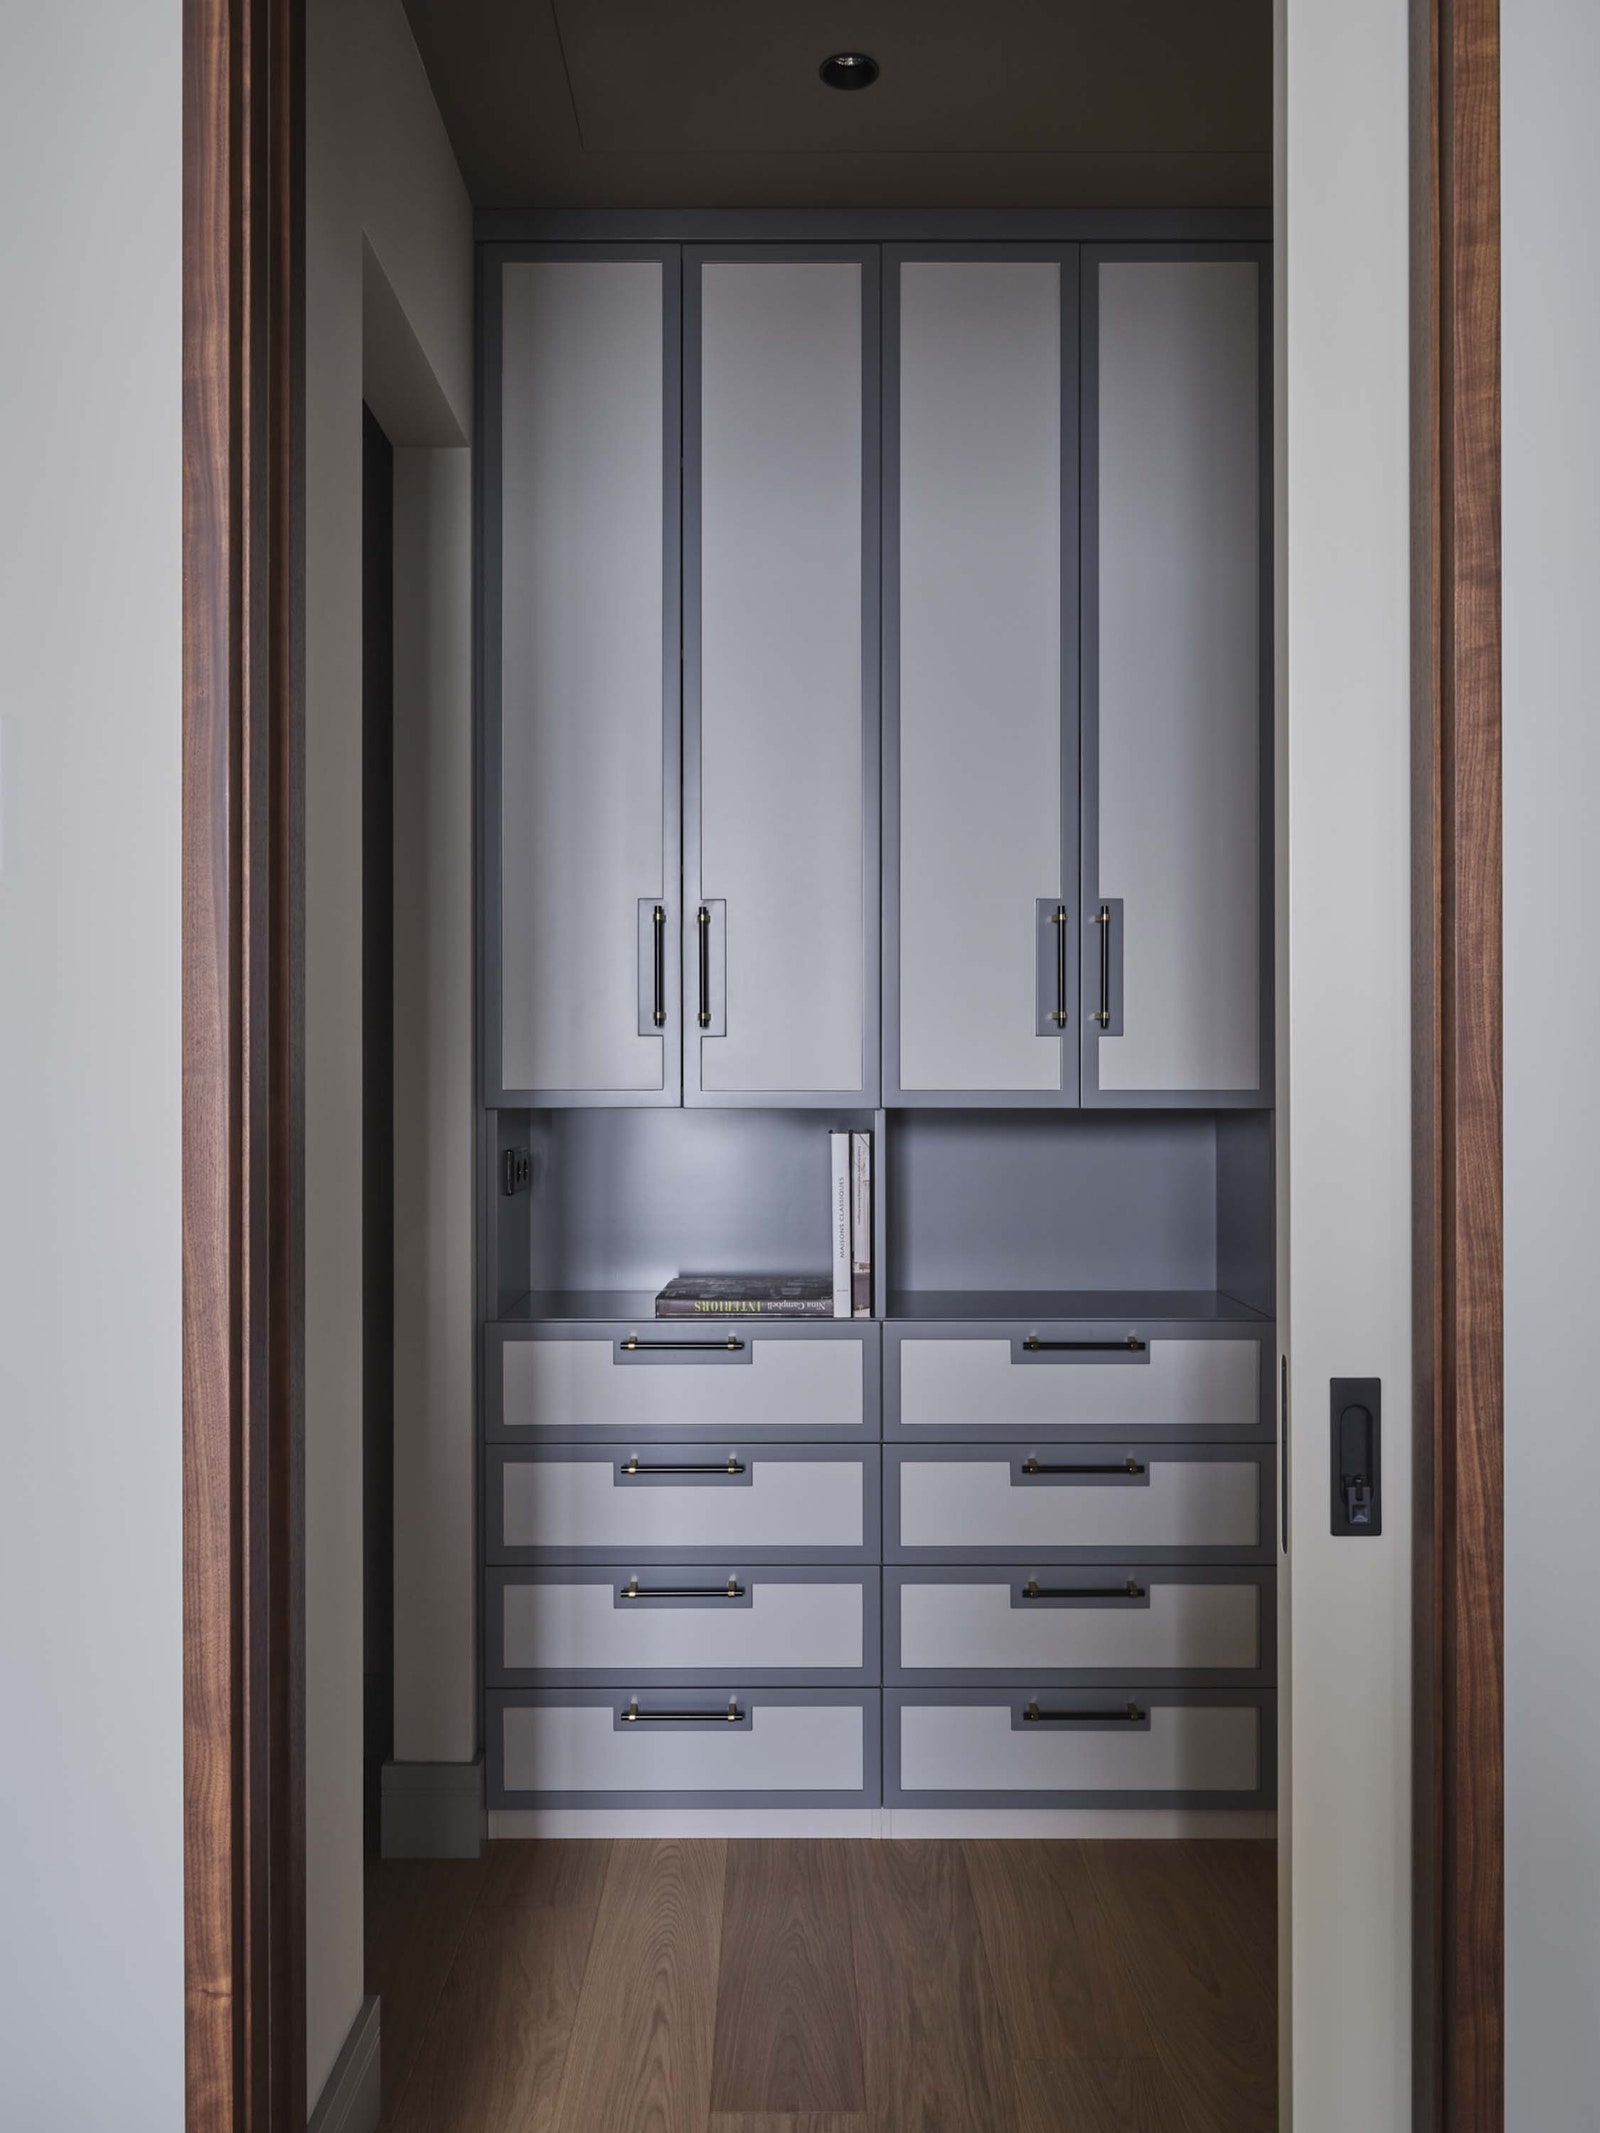 Фрагмент гардеробной. Шкафы сделаны по эскизам дизайнеров в компании Artline Wood.